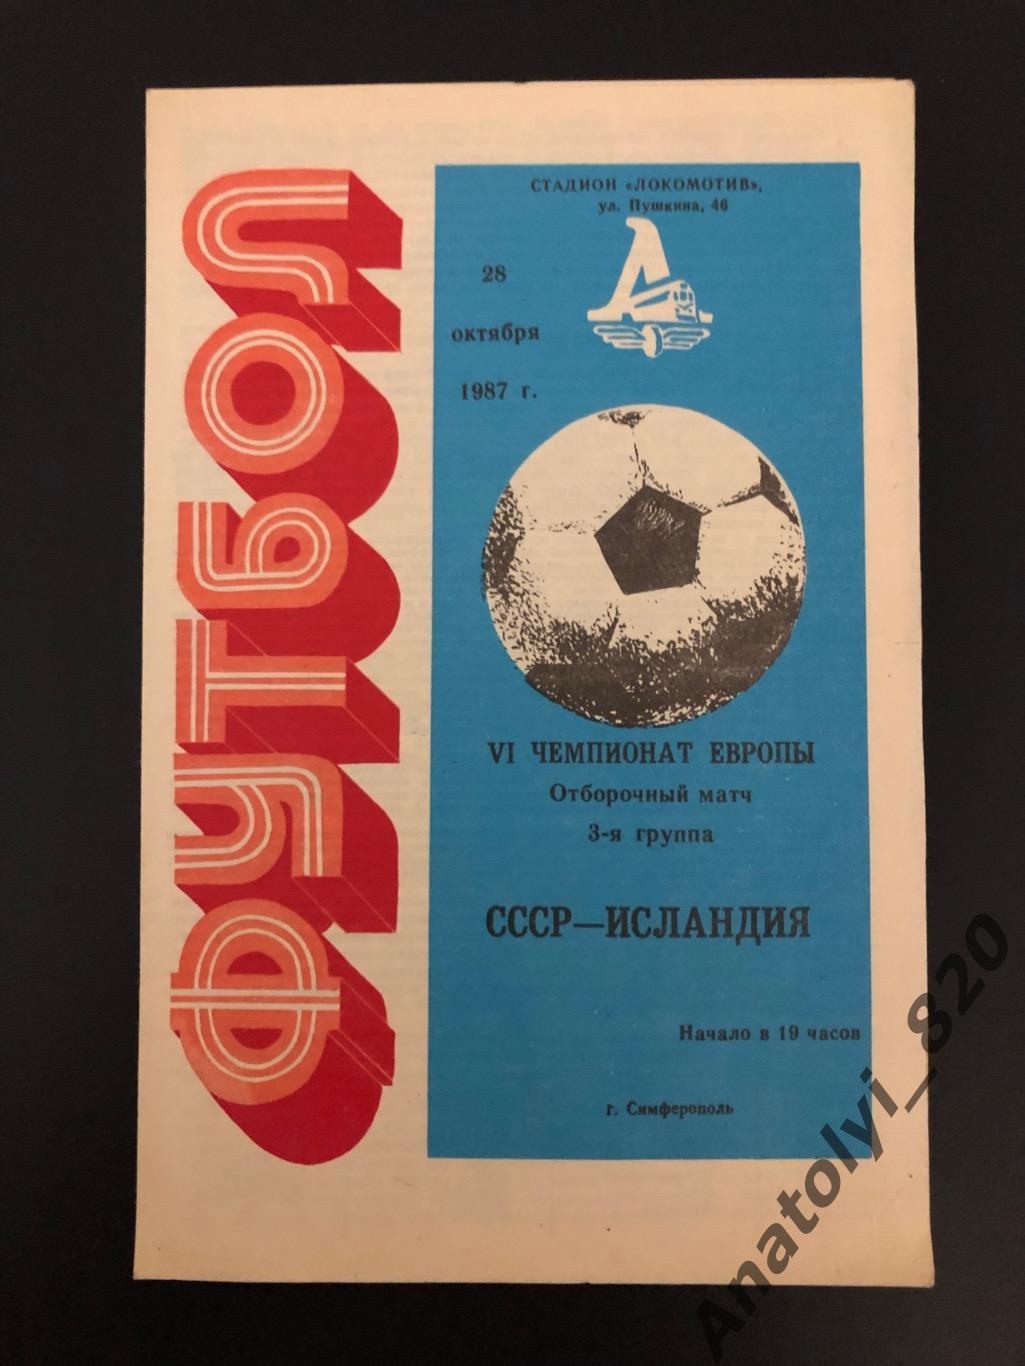 Сборная СССР - сборная Исландии, 28.10.1987